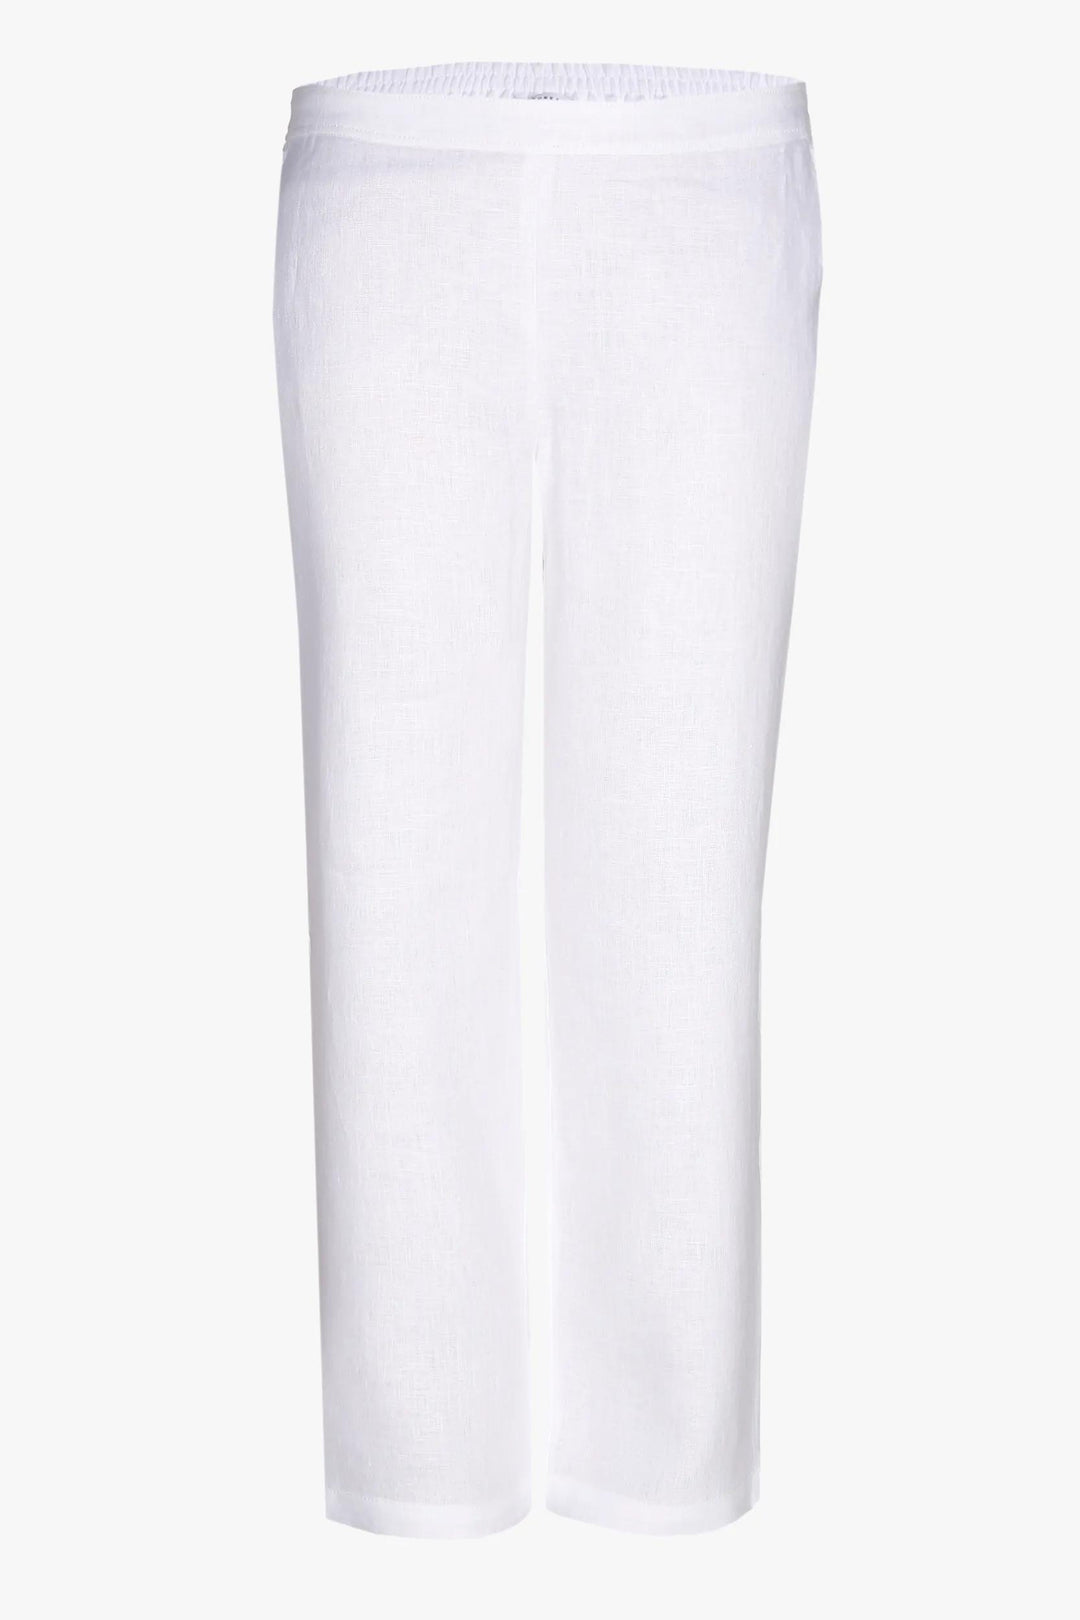 weiße Hose aus fein strukturiertem Stoff